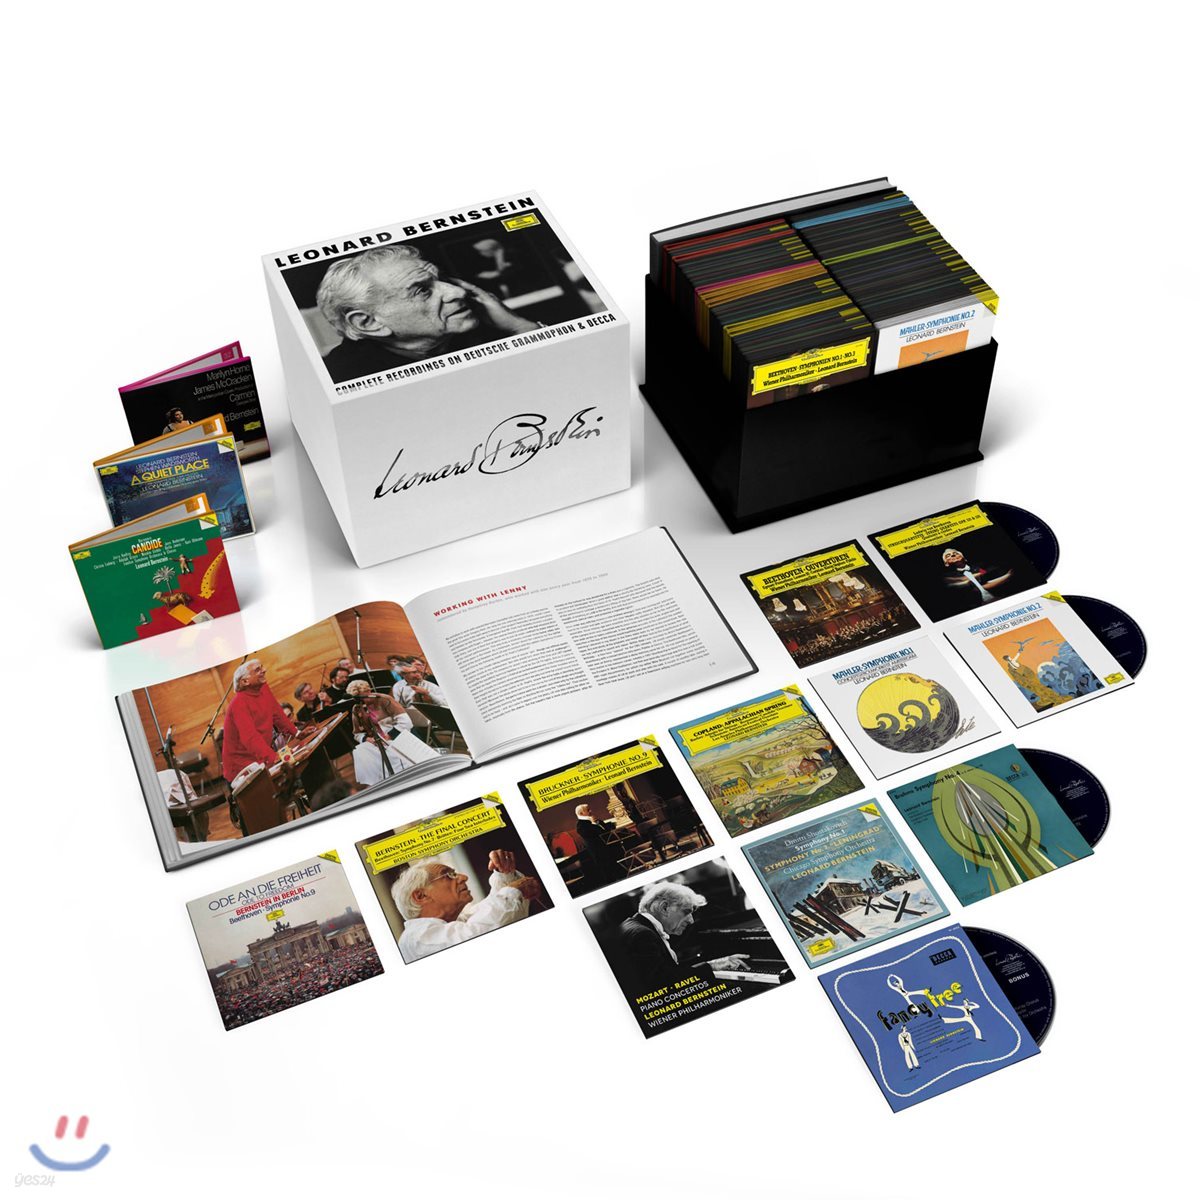 레너드 번스타인 DG. Decca 녹음 전집 (Leonard Bernstein - Complete Recordings on DG & Decca)